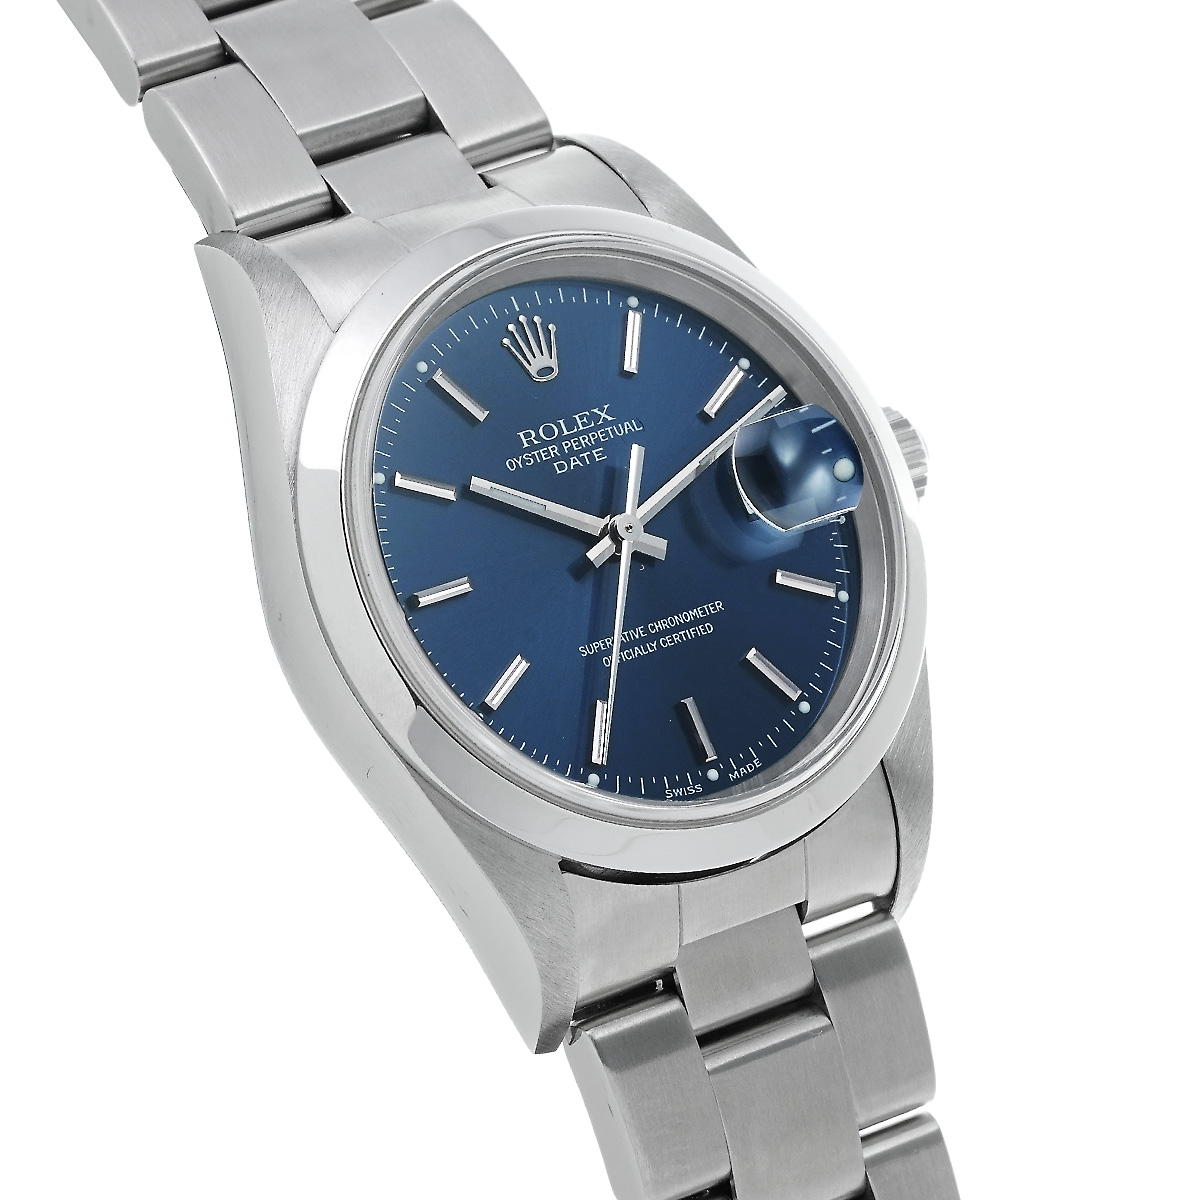 ロレックス ROLEX 15200 W番(1995年頃製造) ブルー メンズ 腕時計